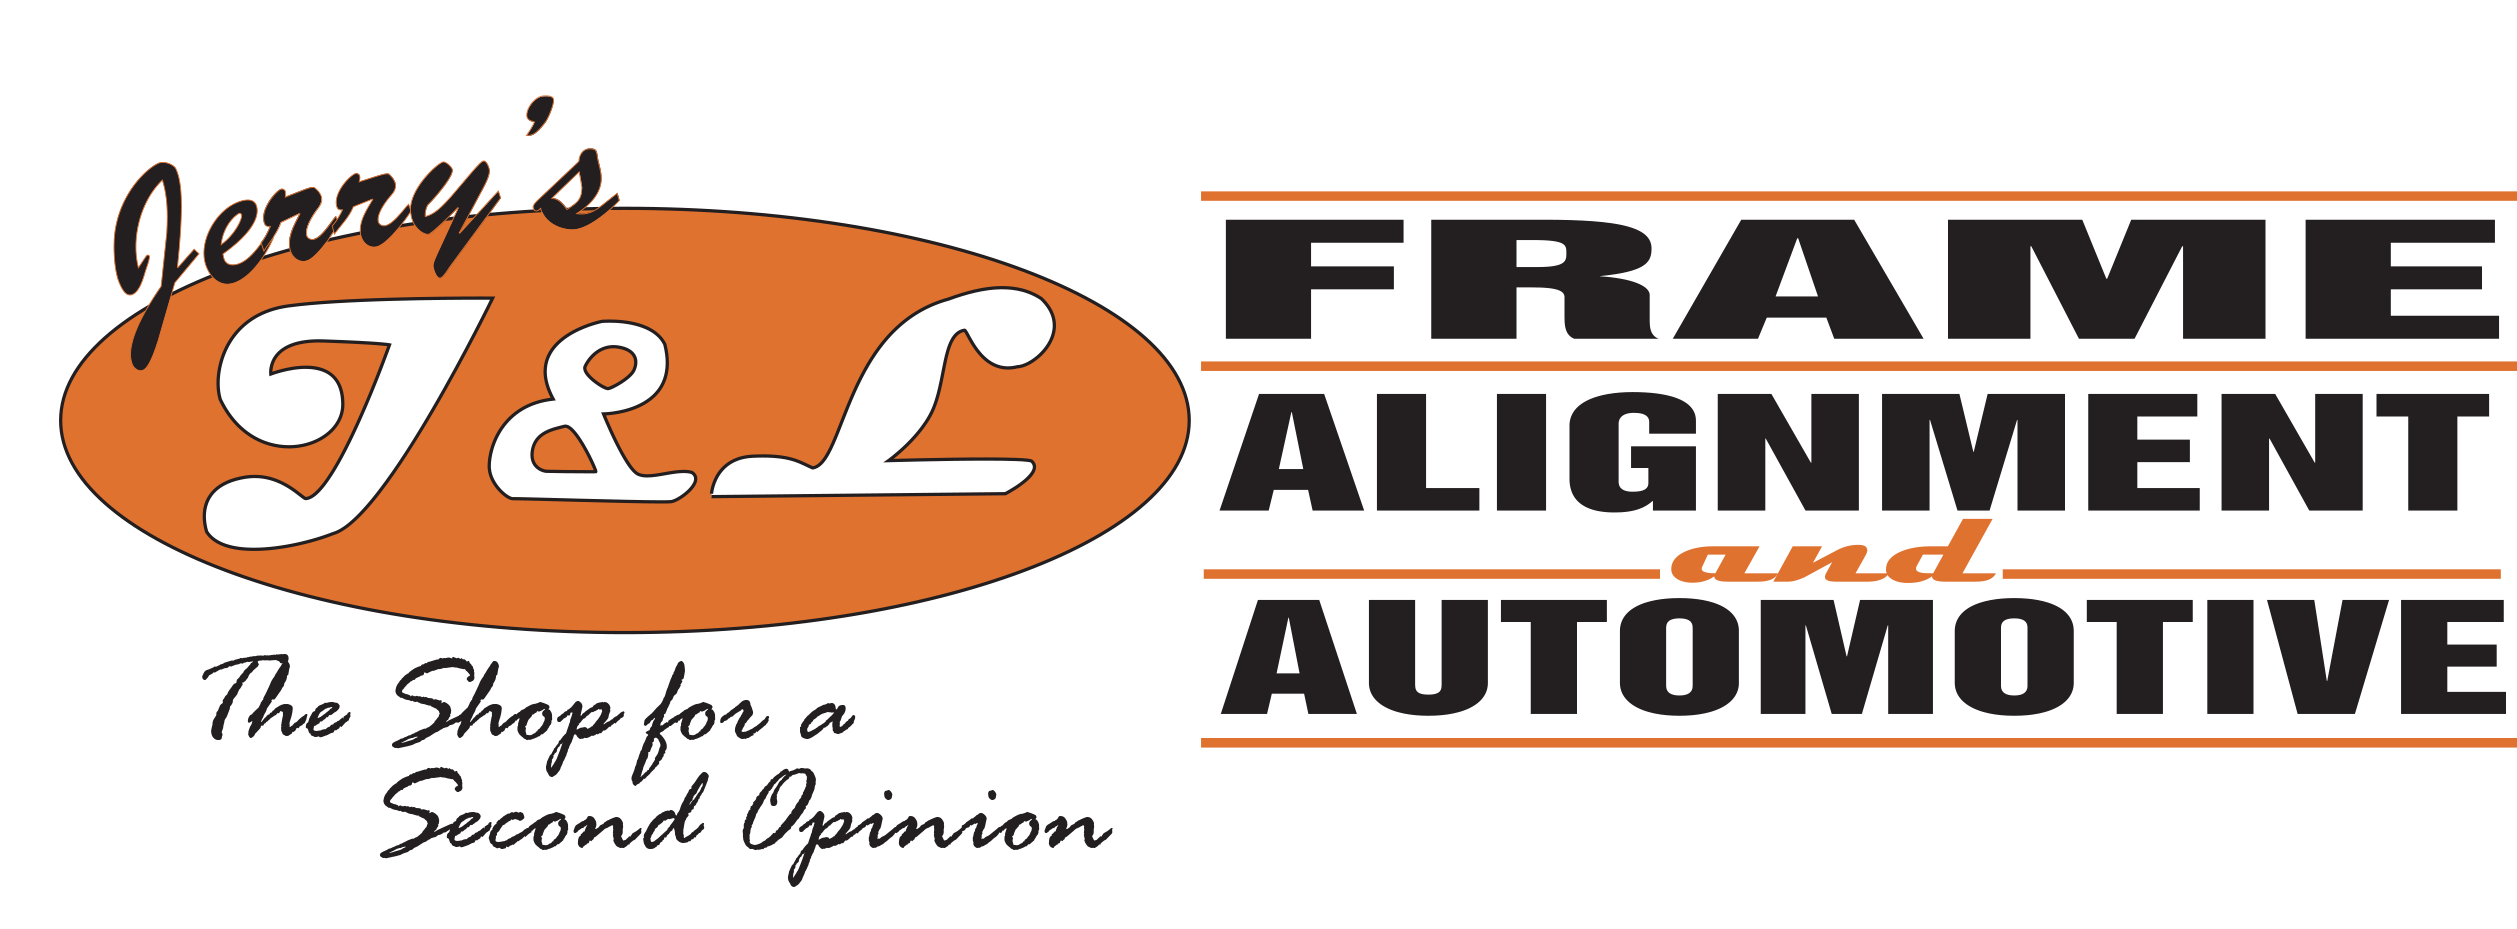 Jerry's J & L Frame Alignment & Automotive